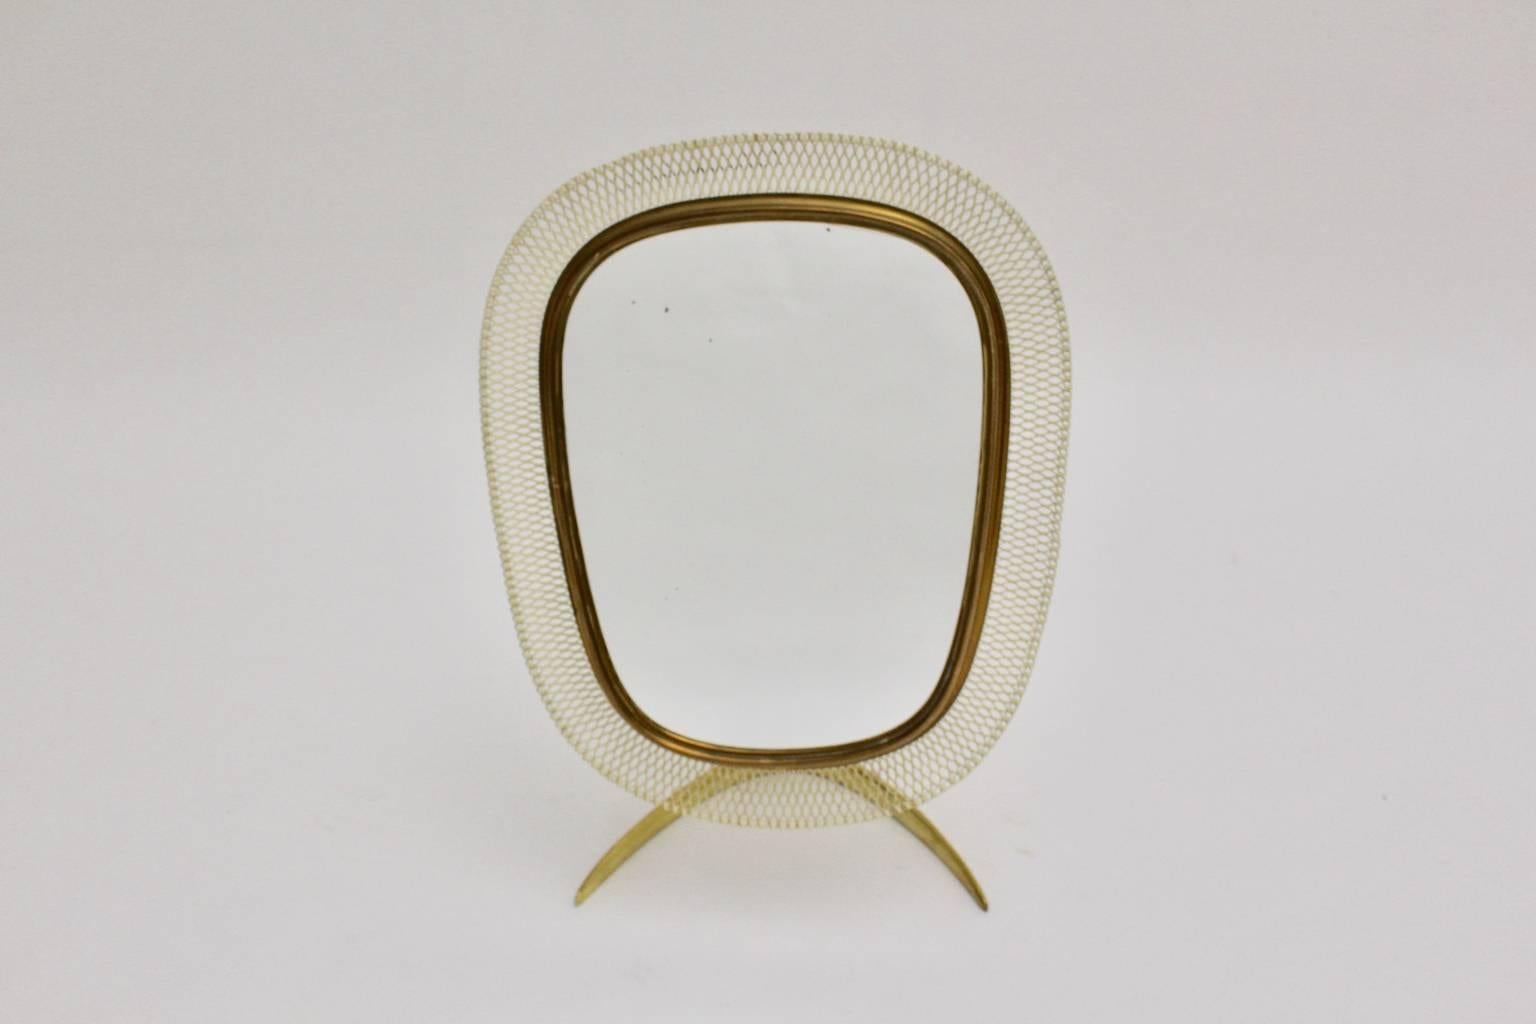 Miroir de table Mid Century Modern composé d'un pied en laiton massif et d'un miroir réglable arrondi avec un cadre en laiton et un fil de maille laqué blanc.

Le dos de ce miroir de table est recouvert d'un tissu blanc ivoire, il présente quelques